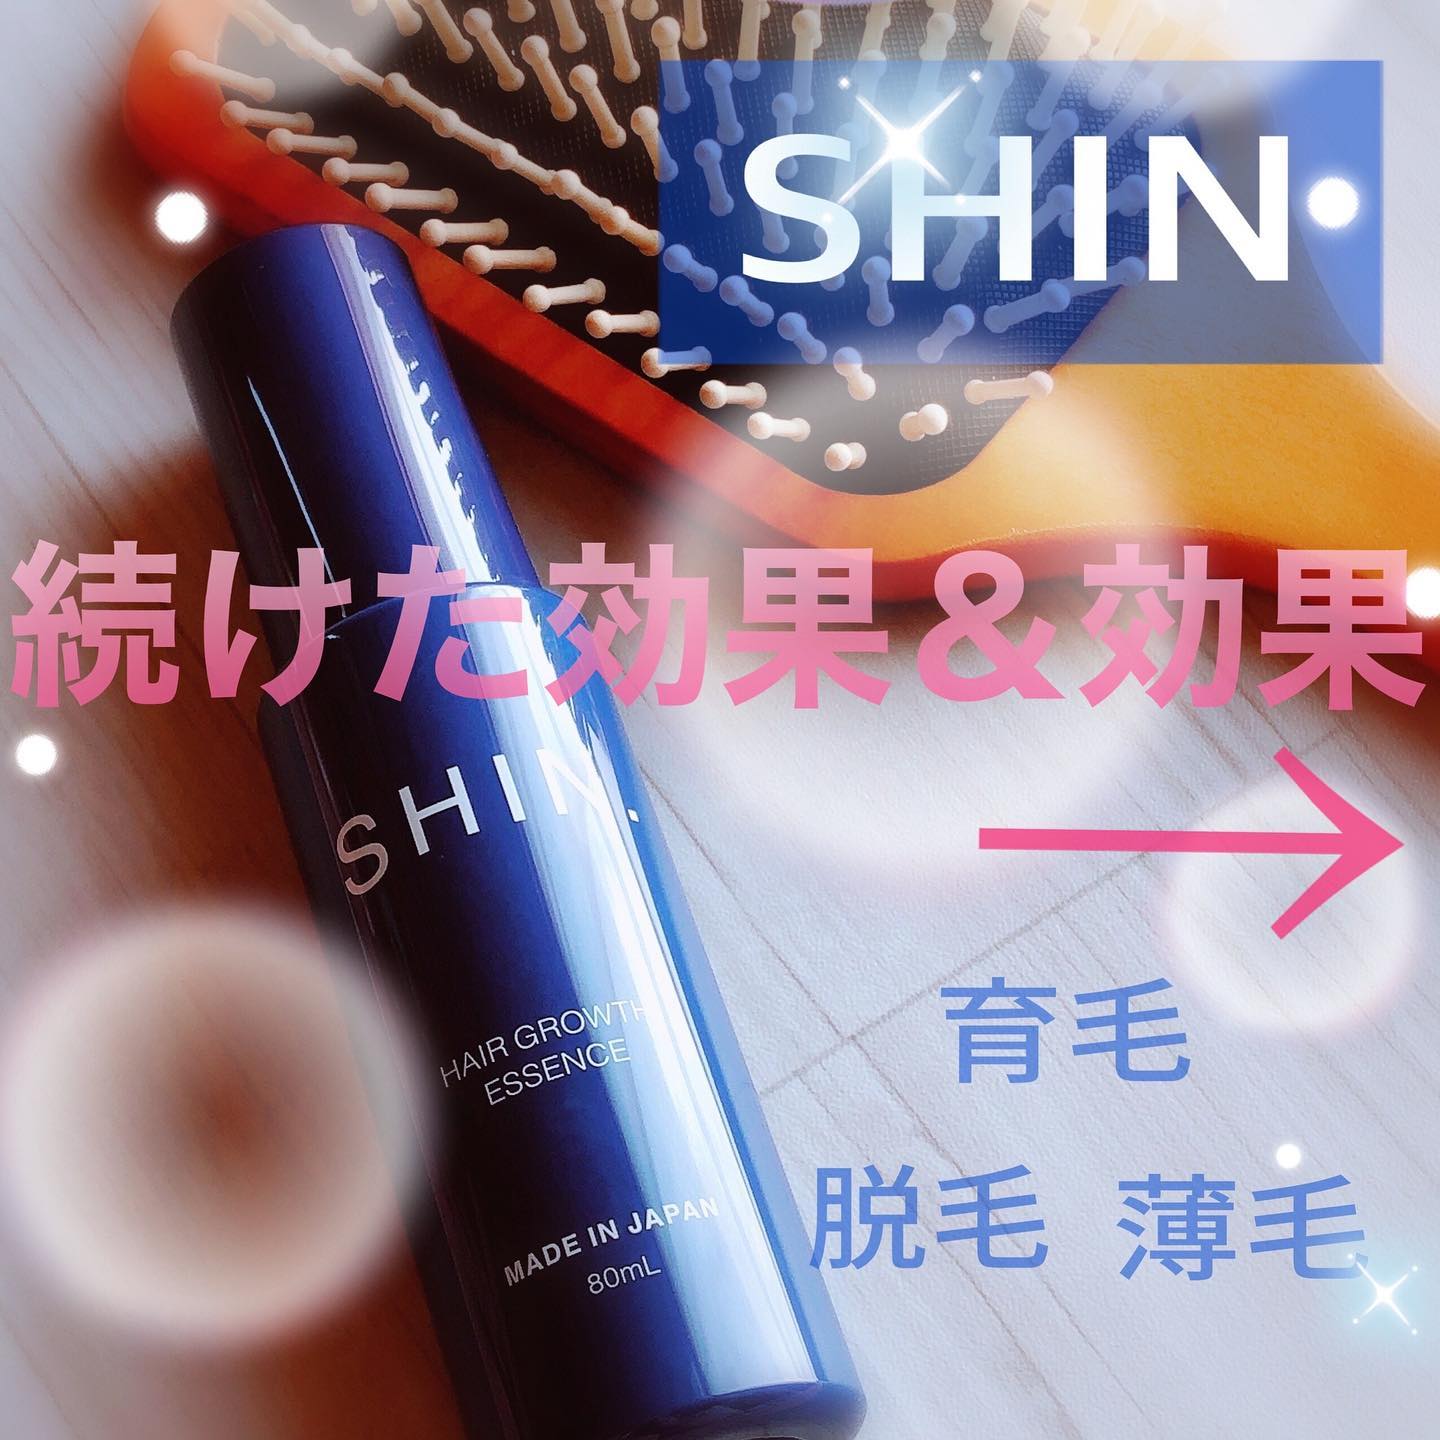 口コミ投稿：SHIN.薬用育毛剤 ㅤㅤㅤㅤㅤㅤ[医薬部外品]80mLㅤㅤㅤㅤㅤㅤㅤㅤㅤㅤㅤㅤ頭皮を休ま…